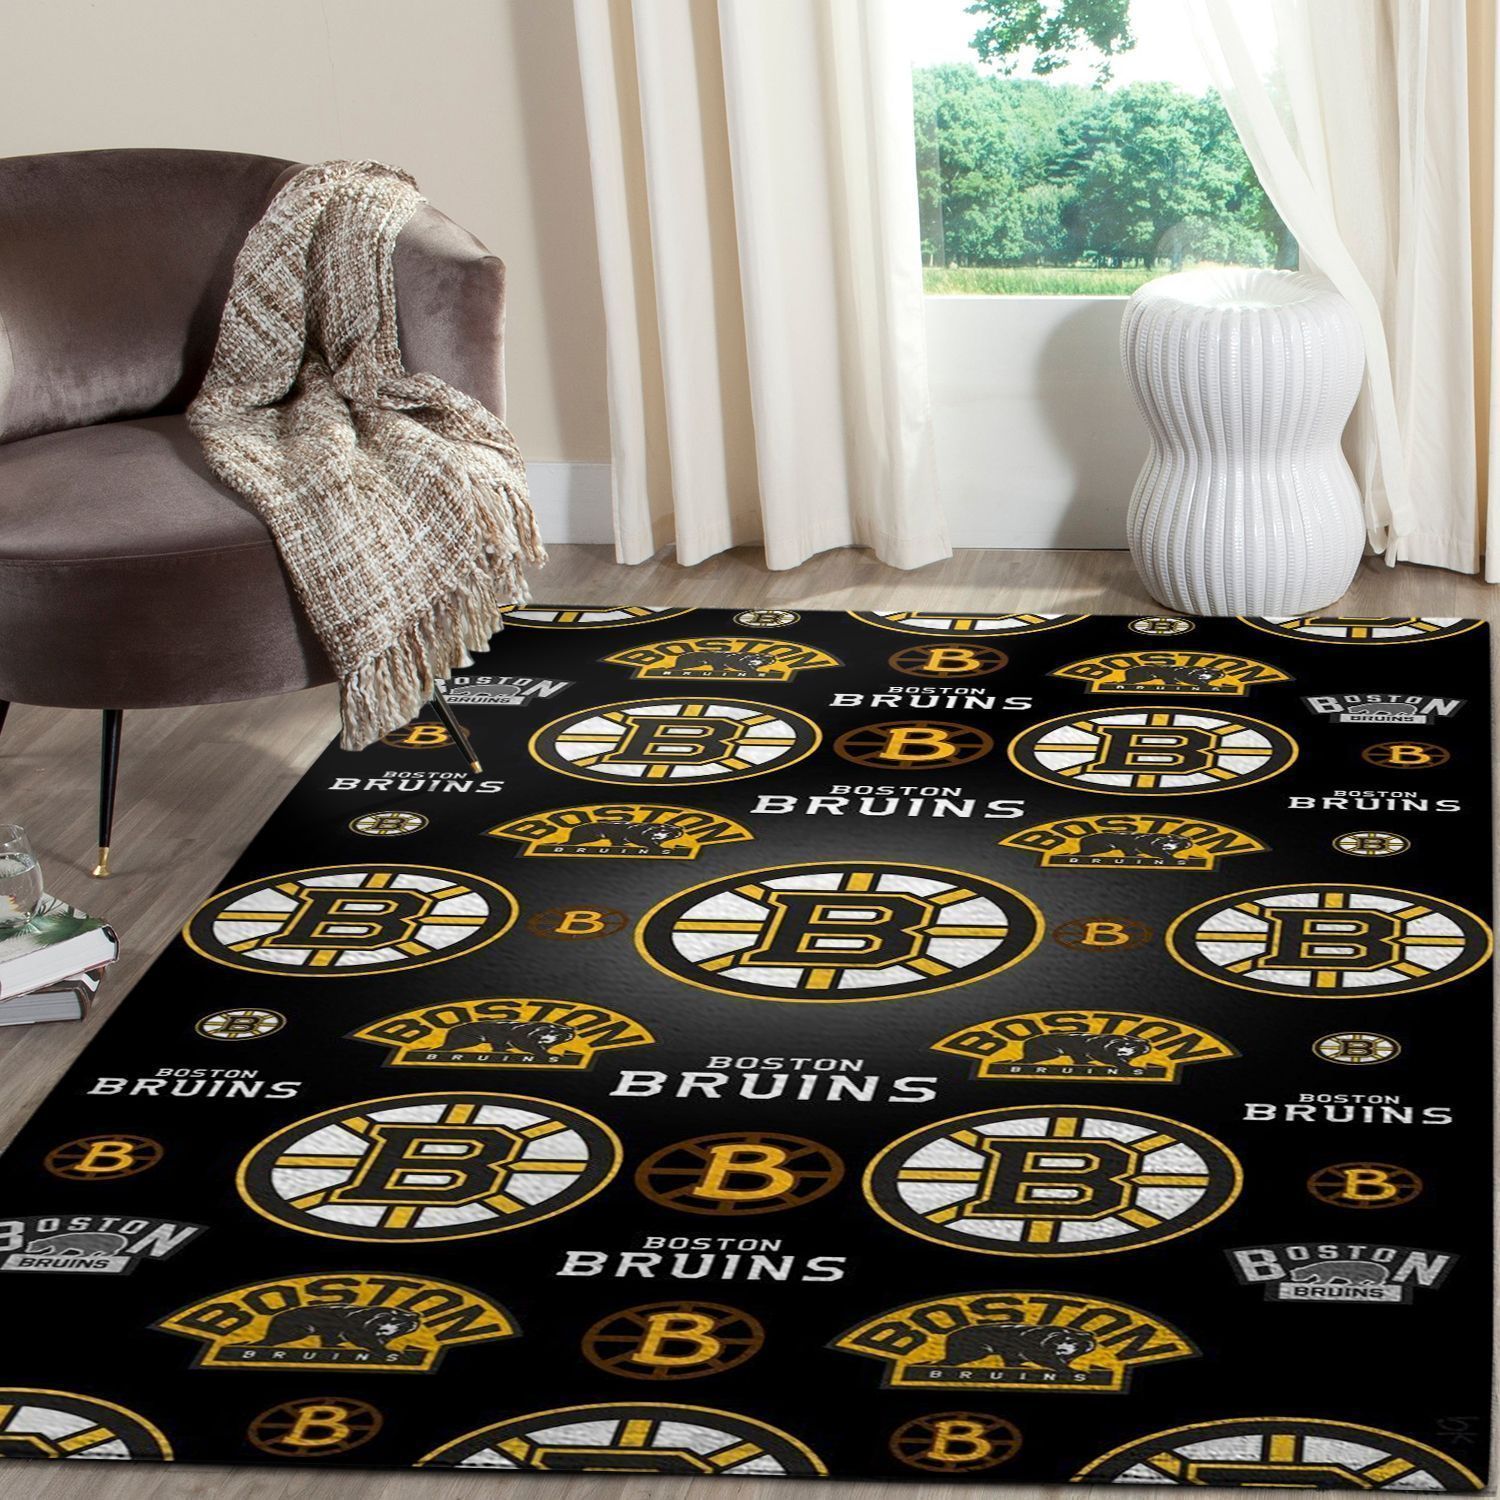 Boston Bruins Logo Nhl Fn Hockeys Custom Type 7156 Rug Living Room Area Carpet Home Decor